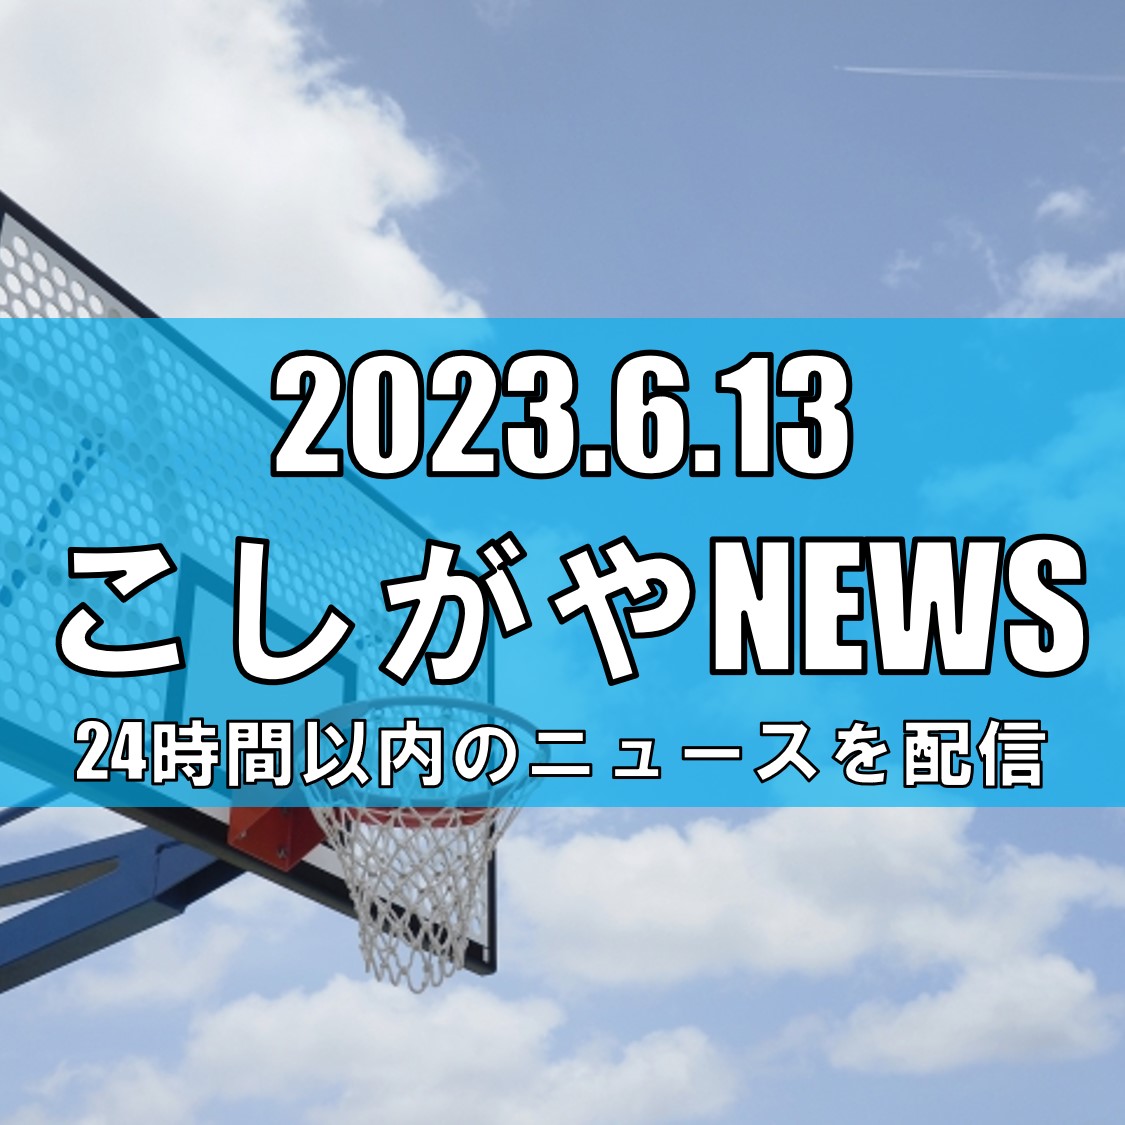 【越谷ニュース】バスケットの越谷アルファーズが日本代表候補の井上宗一郎を獲得